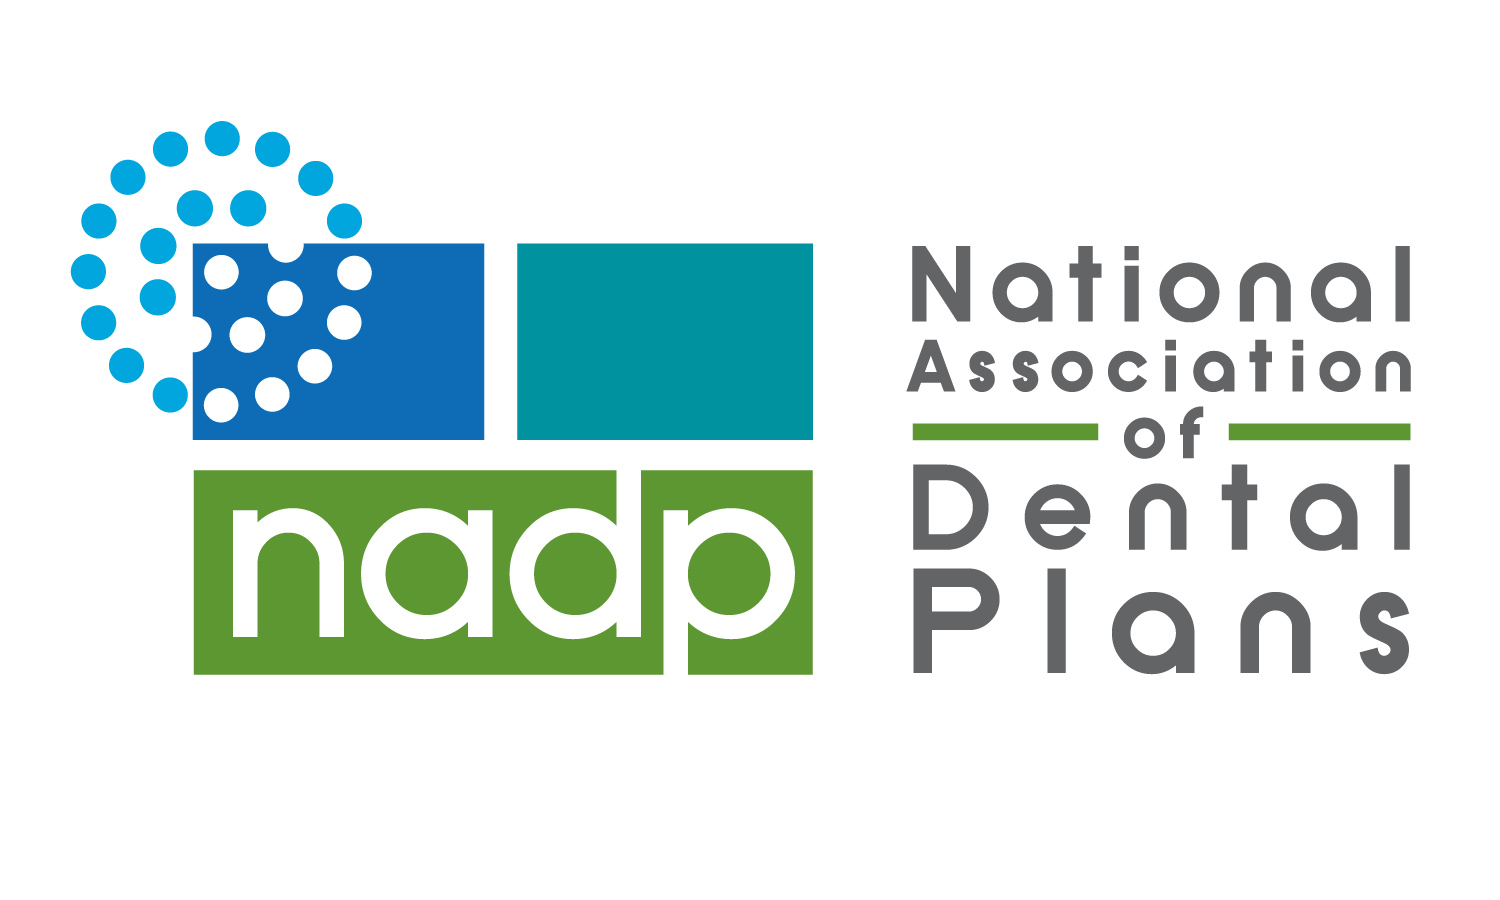 NADP  Logo (for web).jpg